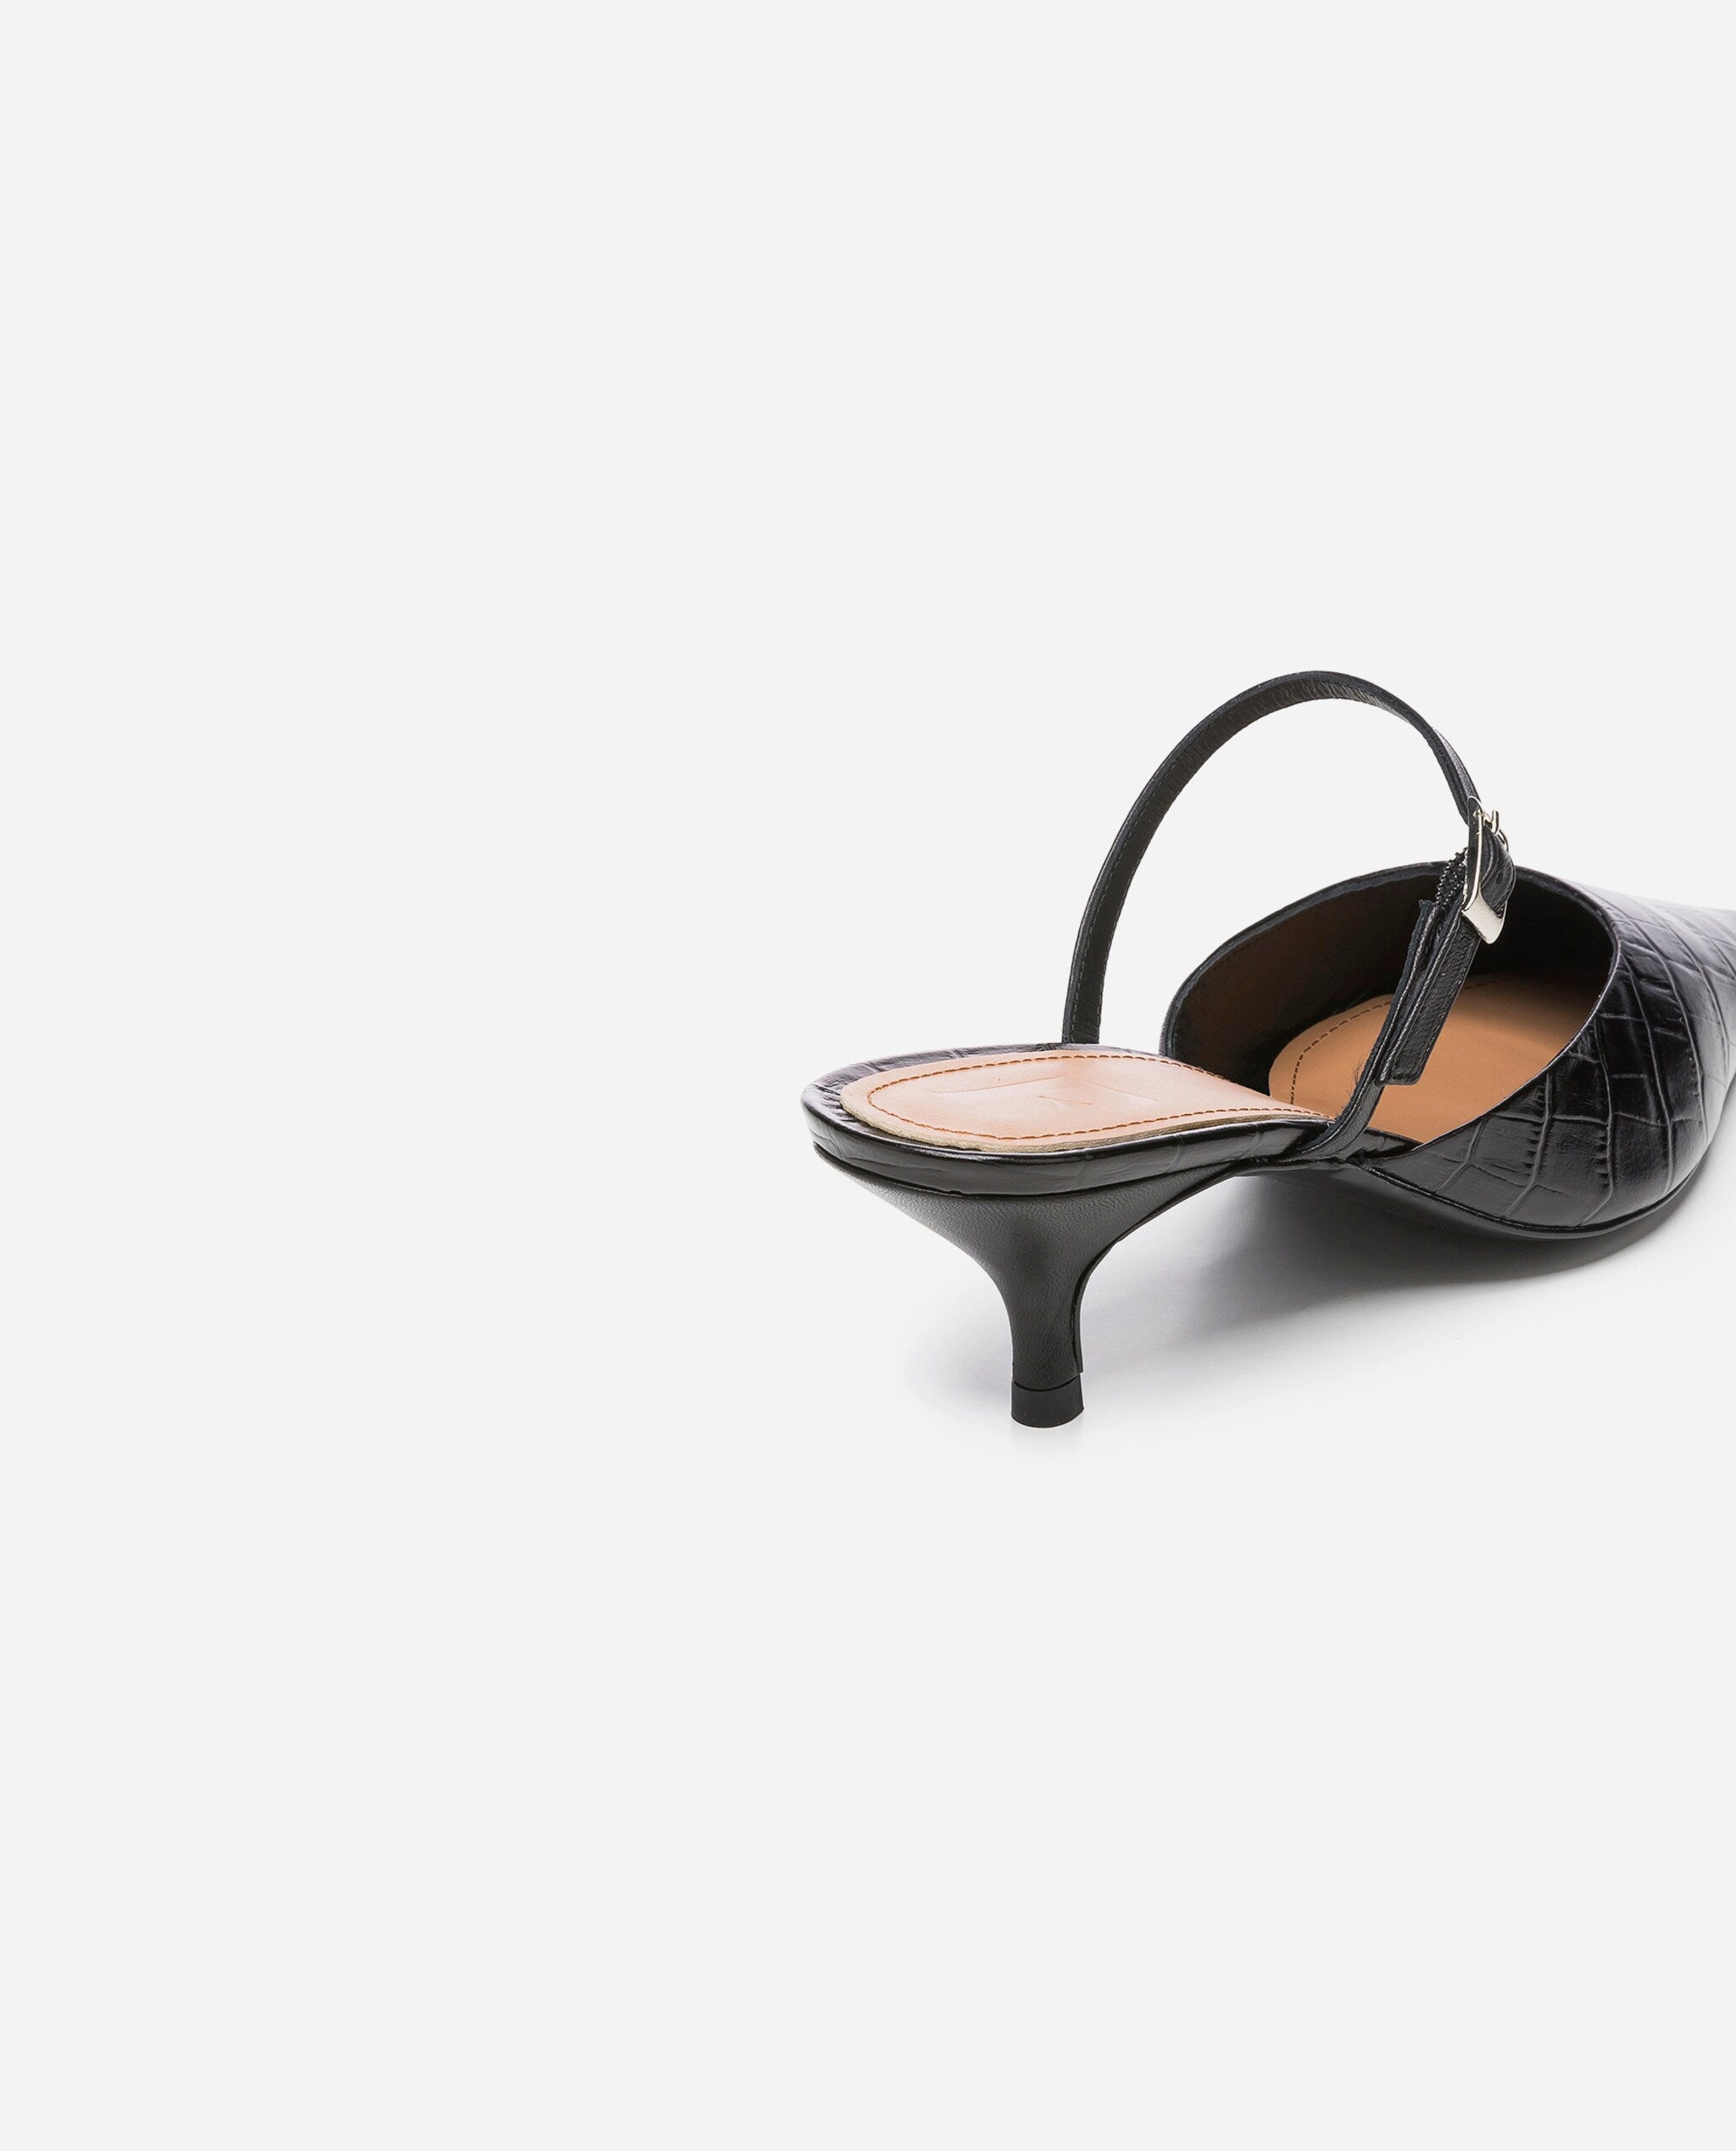 Hilda Croco Leather Black Mule Shoes Heels 20010411817-001 - 5